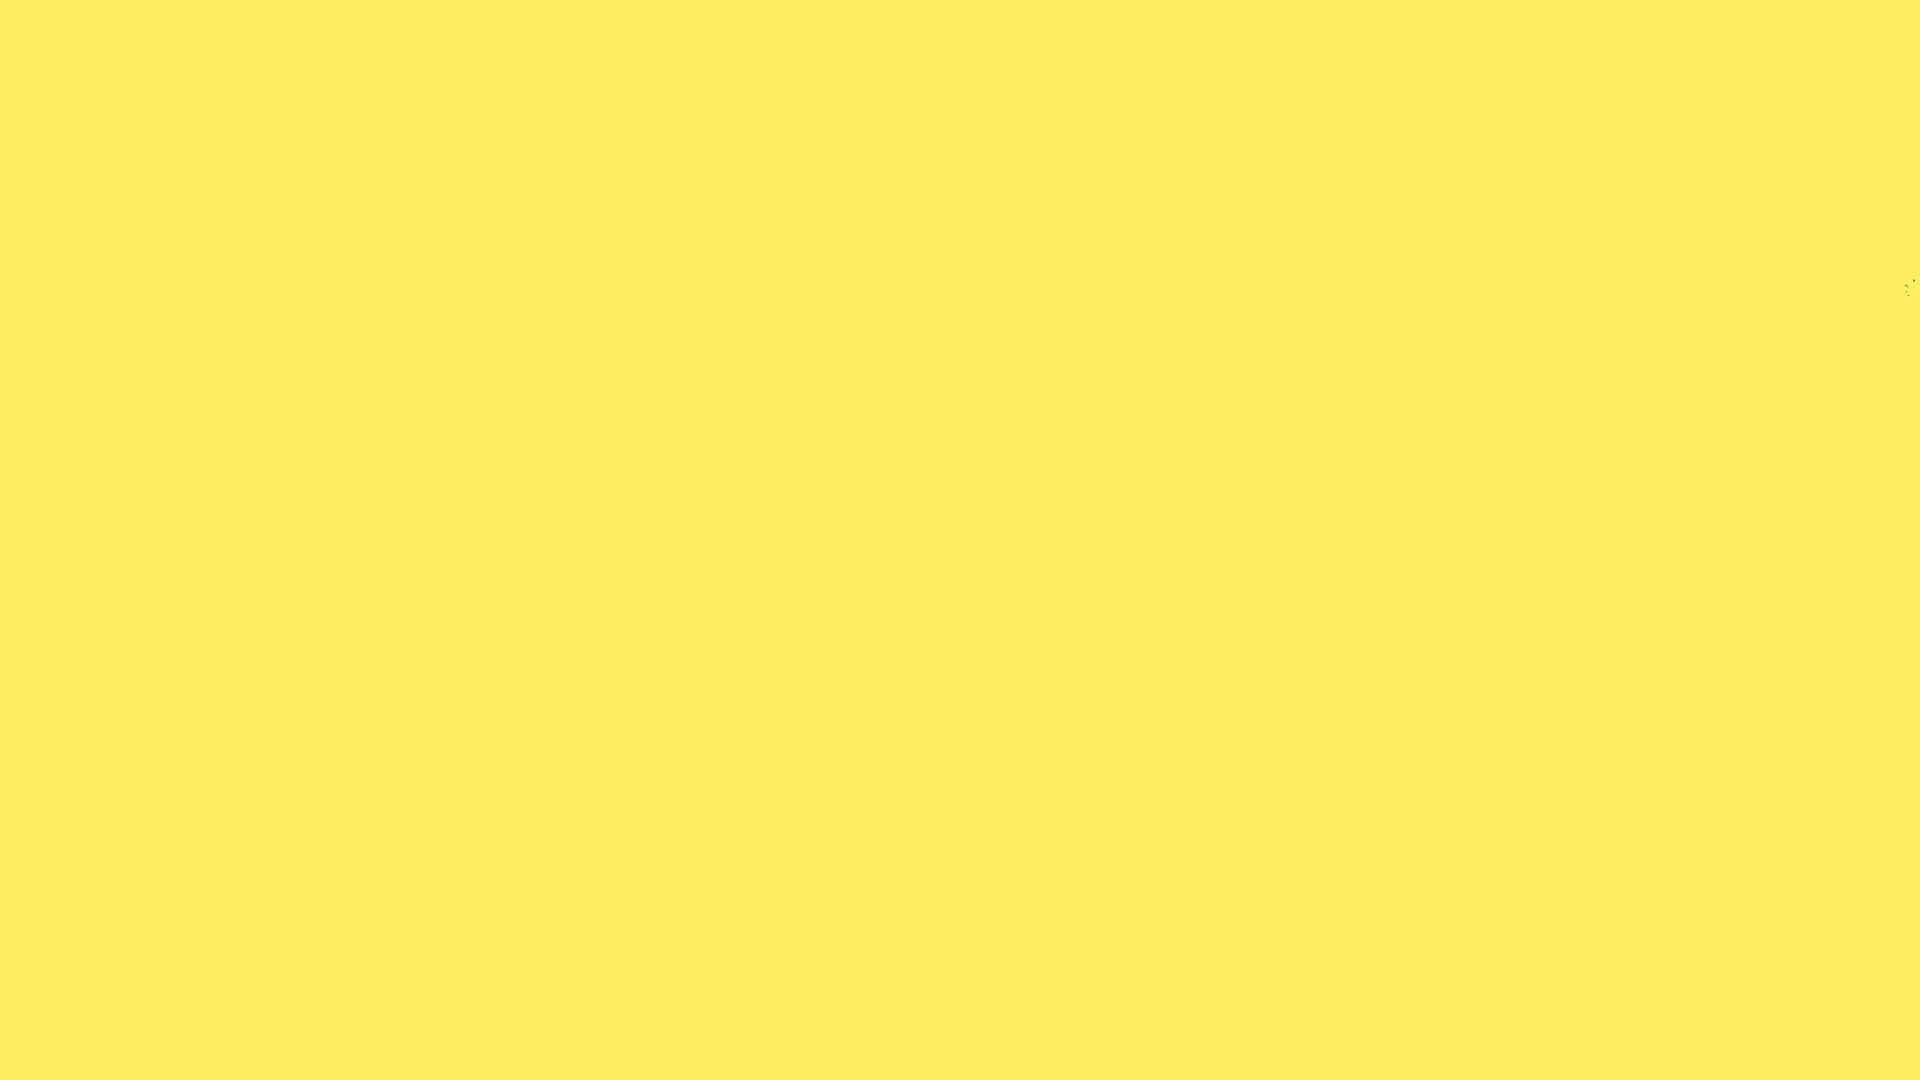 Bildaufhellen Sie Ihren Arbeitstag Mit Einem Fröhlichen, Gelben Desktop-hintergrund! Wallpaper